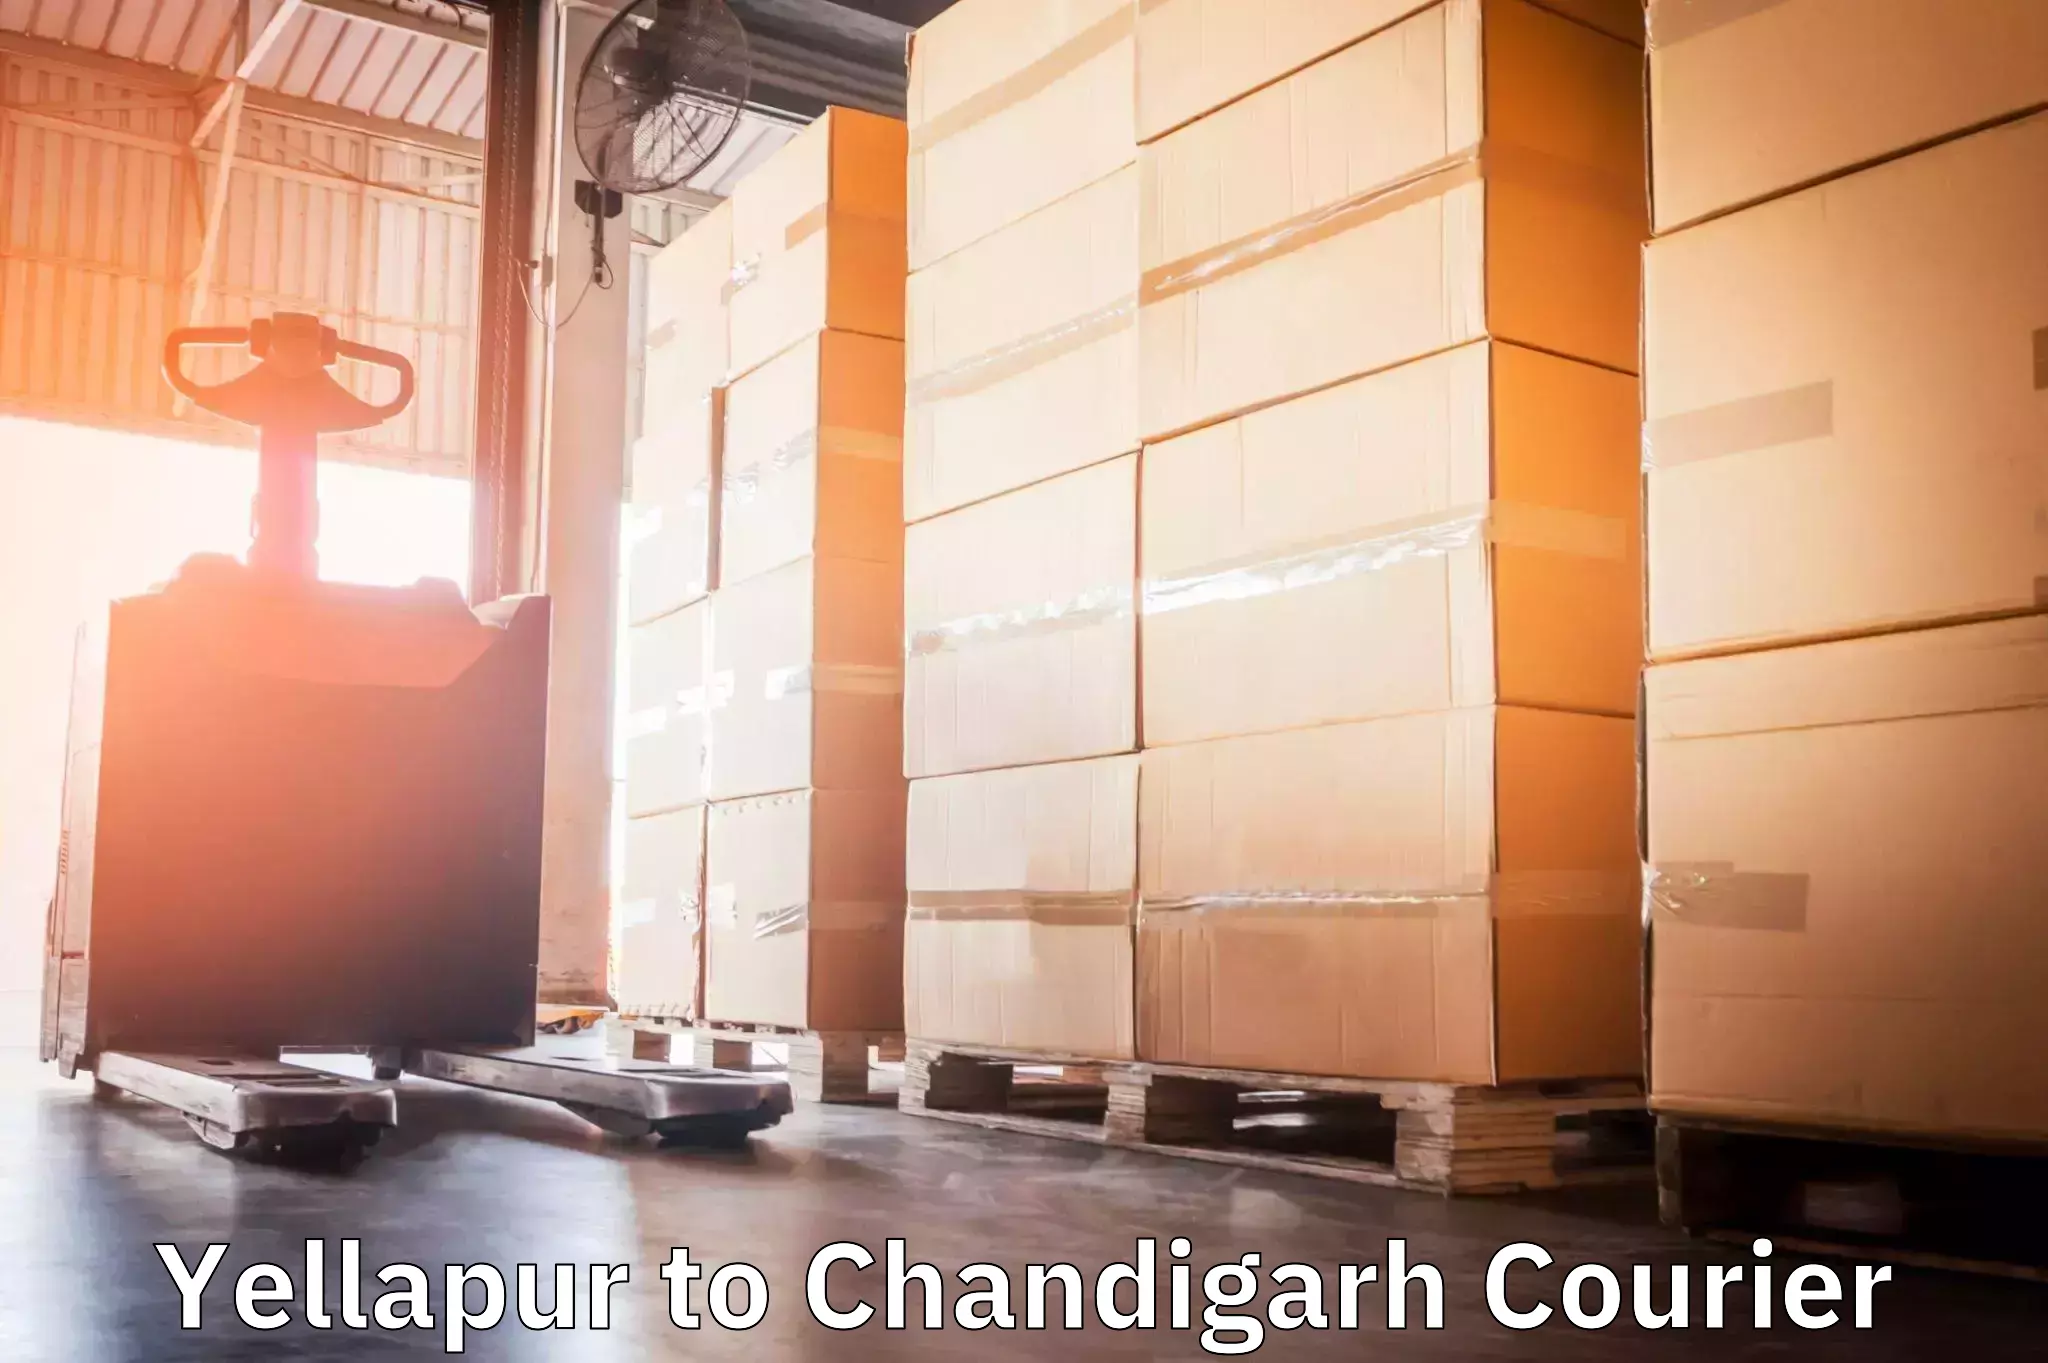 Urgent courier needs Yellapur to Chandigarh